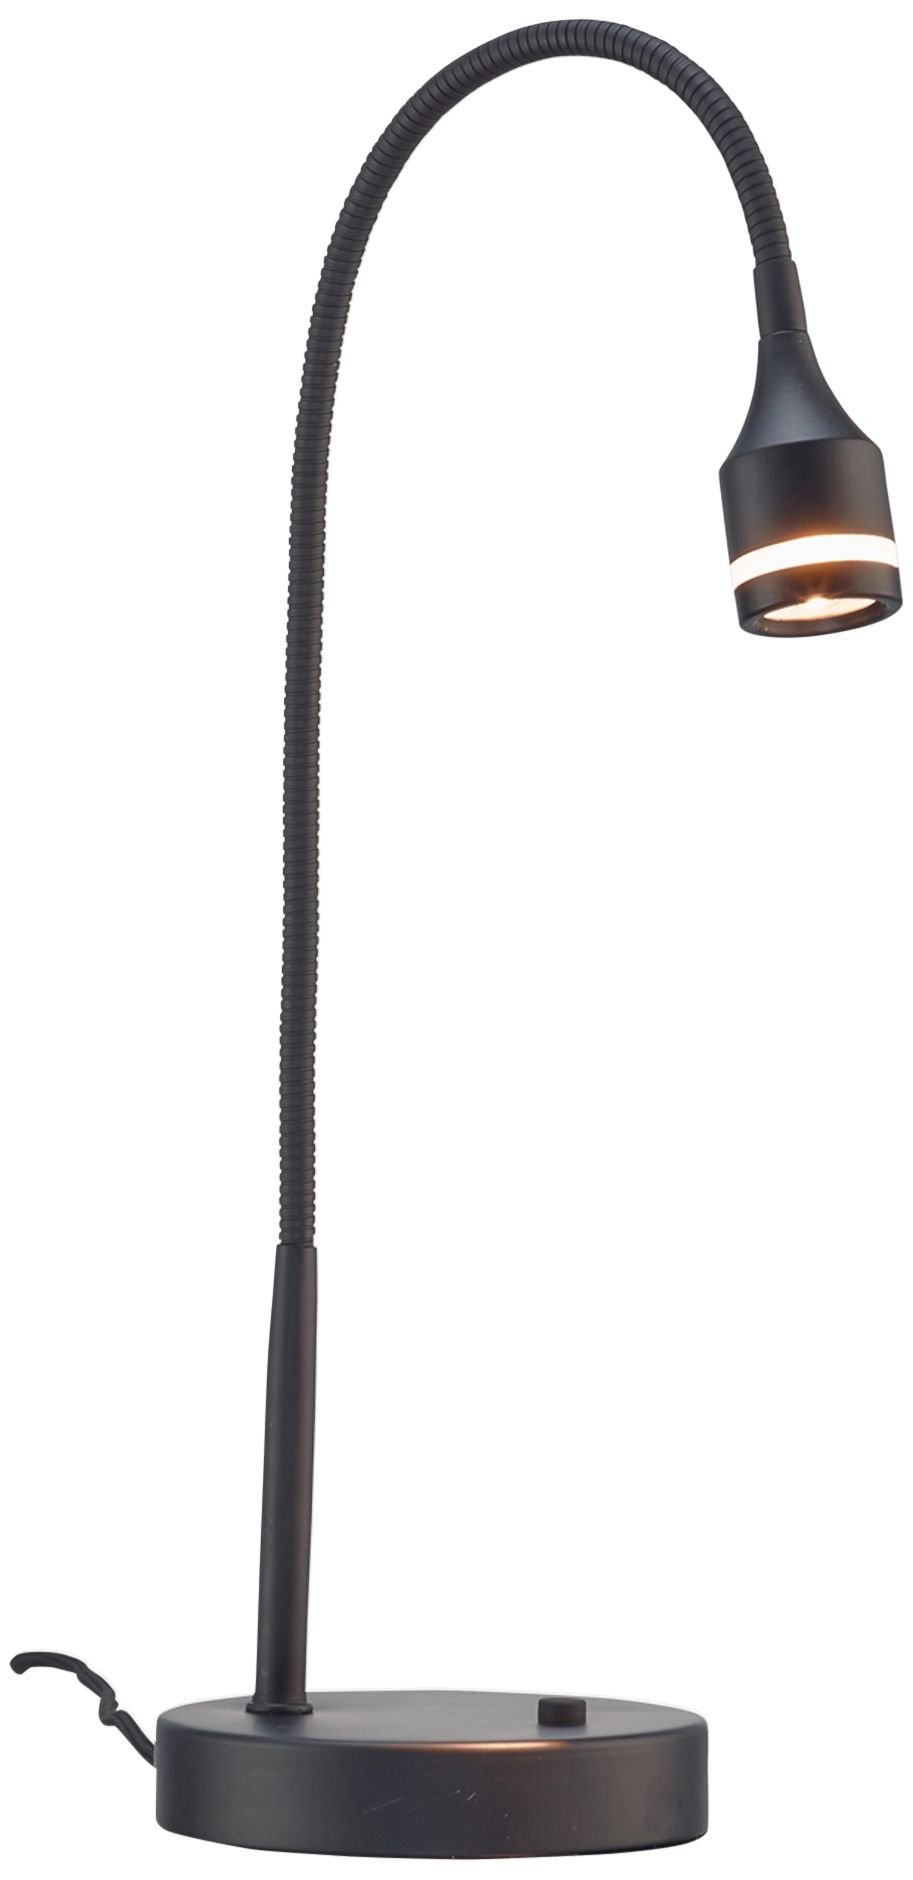 Adesso Sawyer Matte Black Adjustable Gooseneck Arm LED Desk Lamp